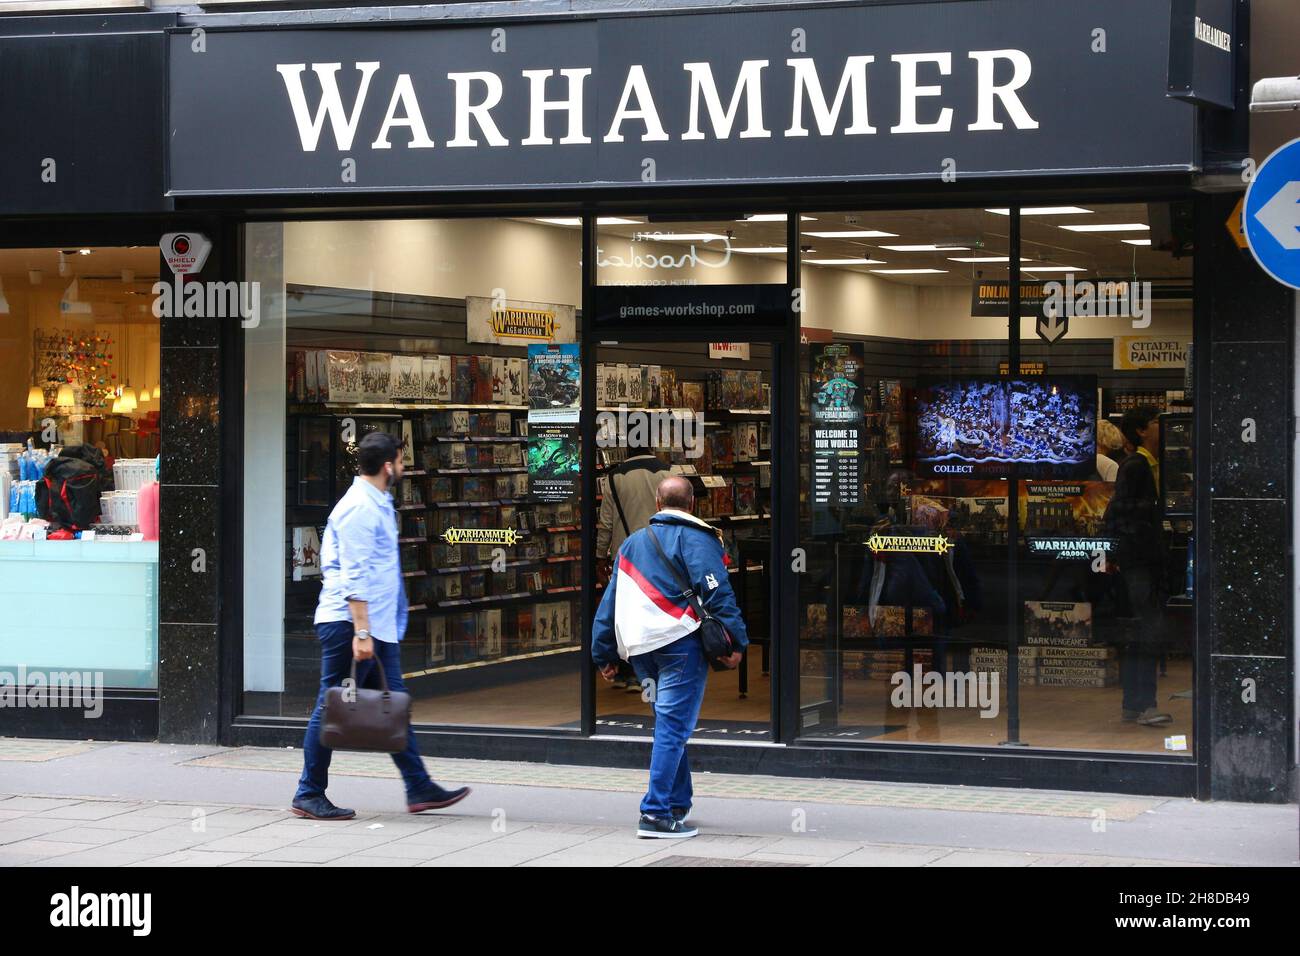 Tienda warhammer londres fotografías e imágenes de alta resolución - Alamy